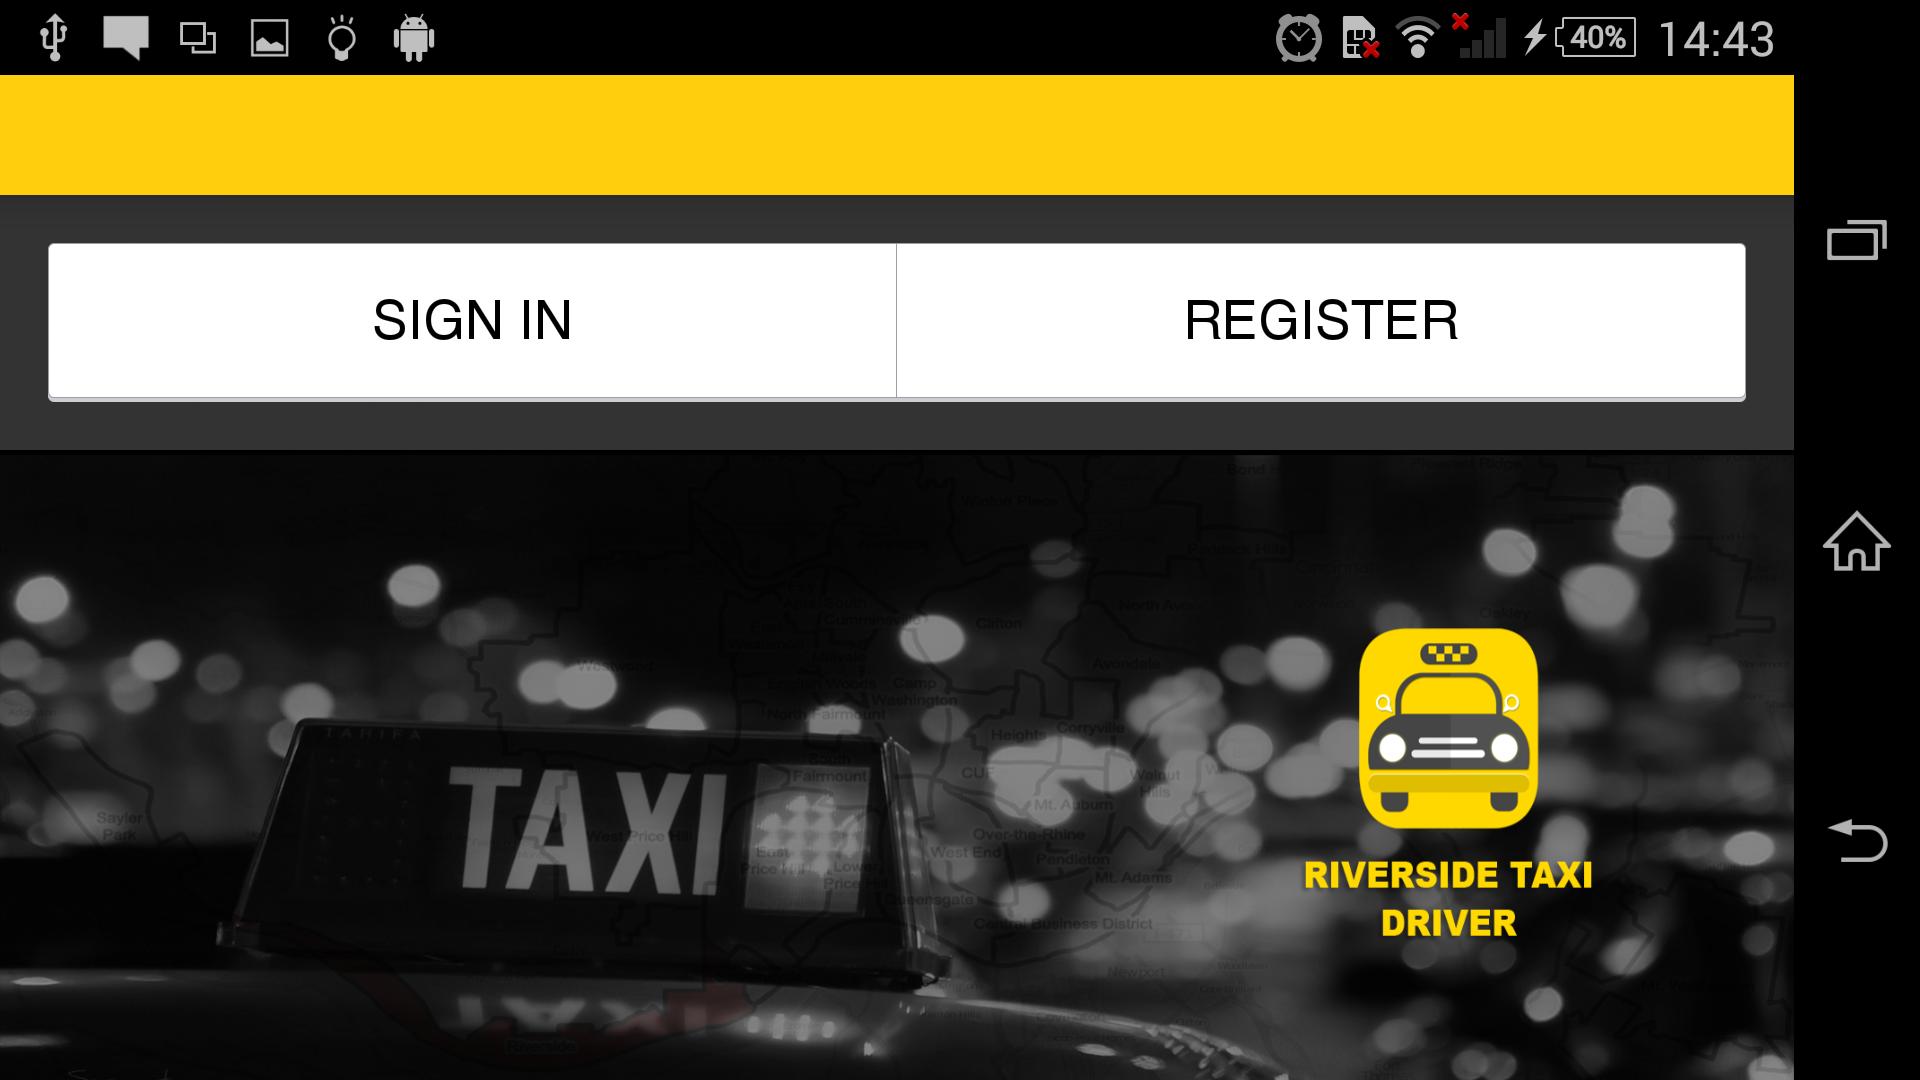 Такси драйвер rfhnf. Приложение такси драйвер. Такси драйвер в каком городе находится.